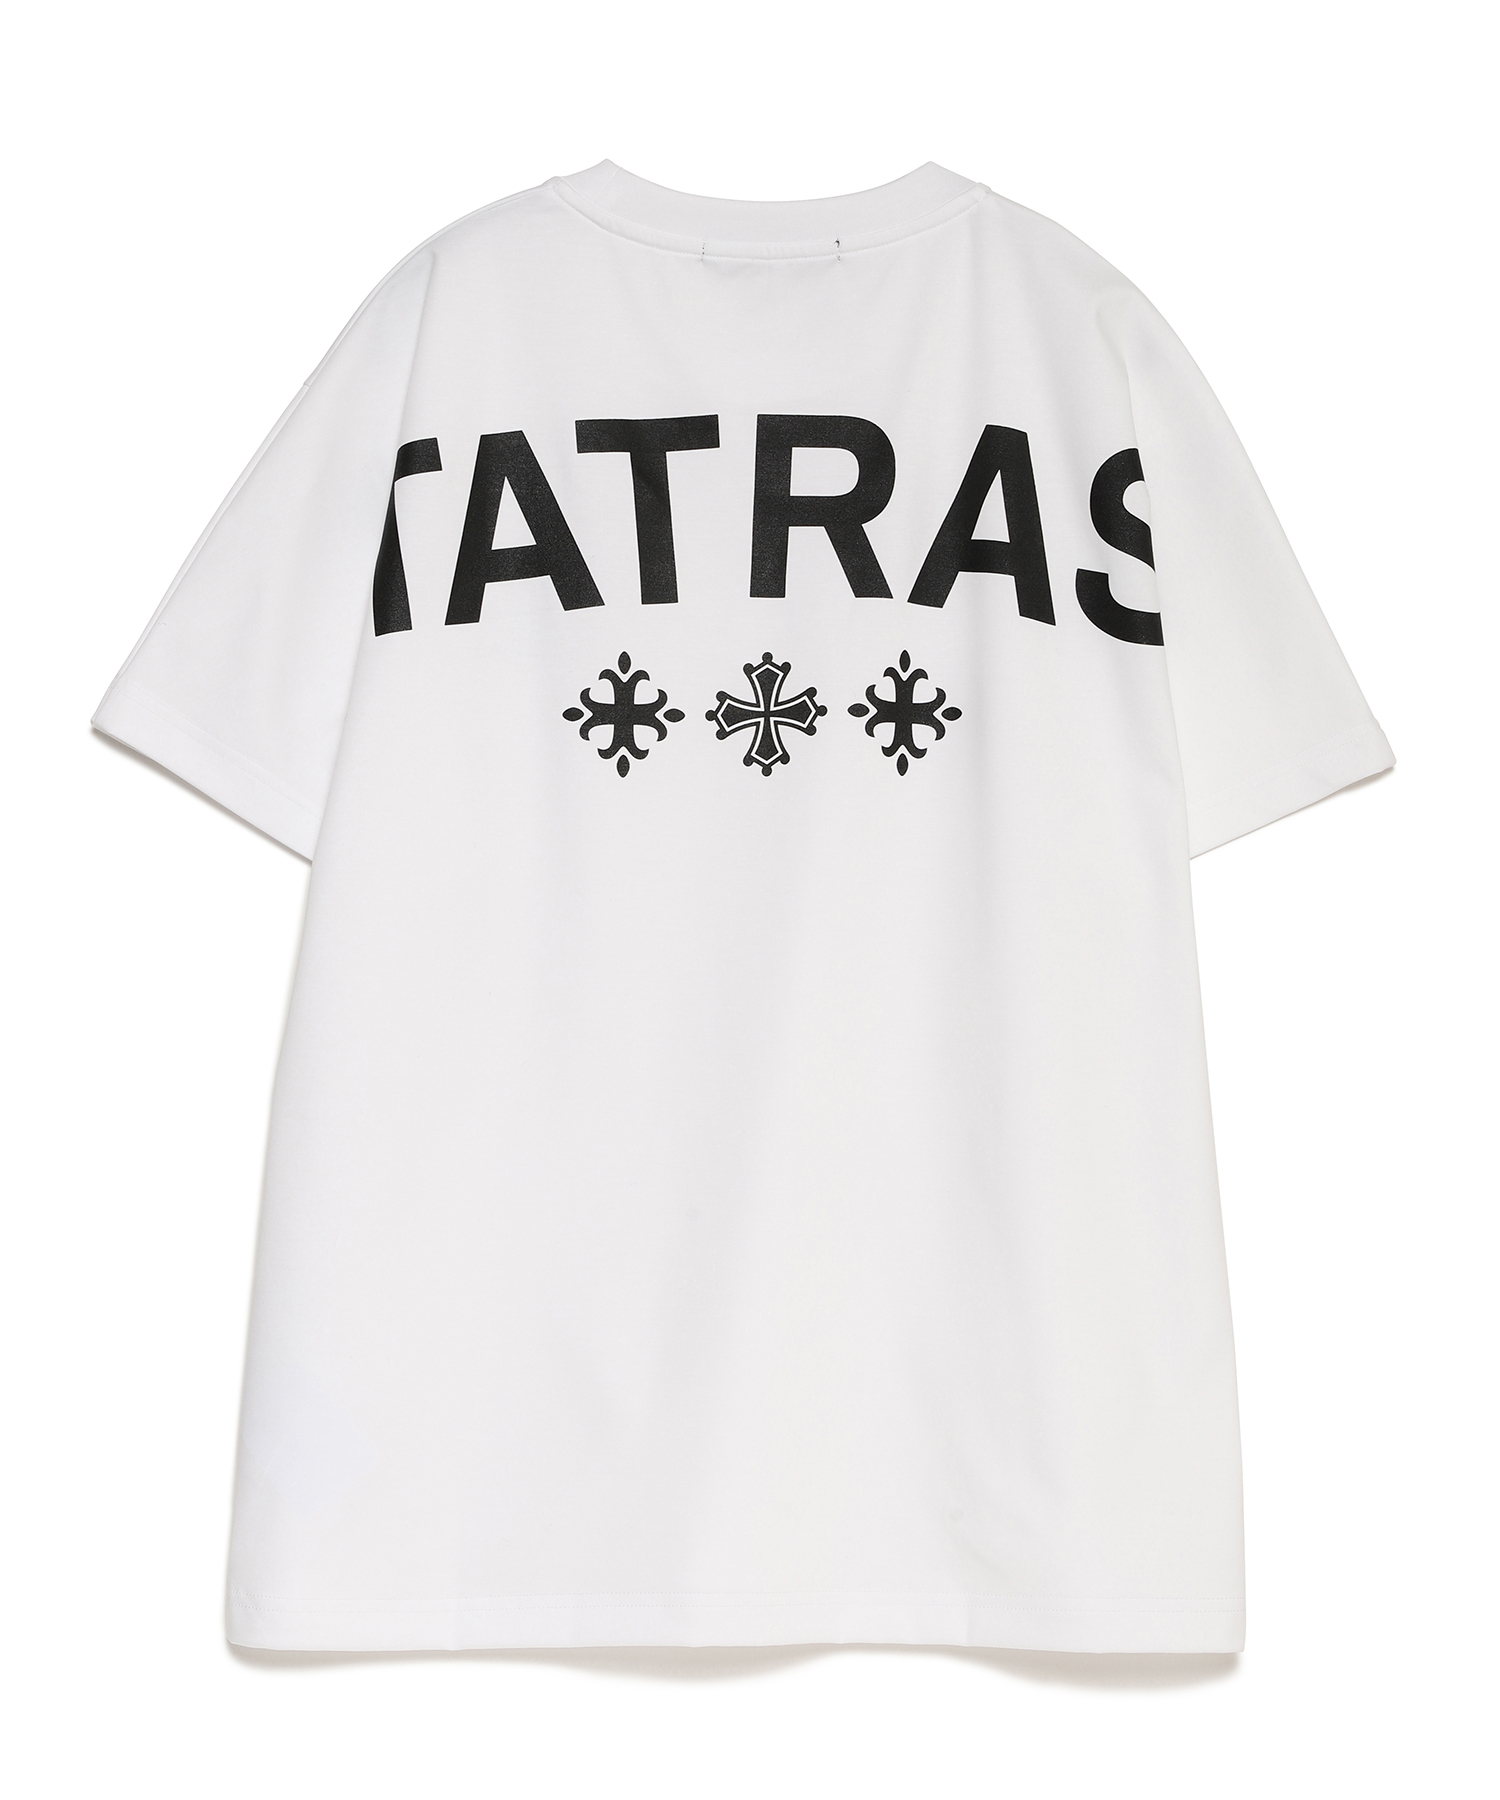 TATRAS(タトラス) EION エイオン ホワイト tシャツ サイズ4-